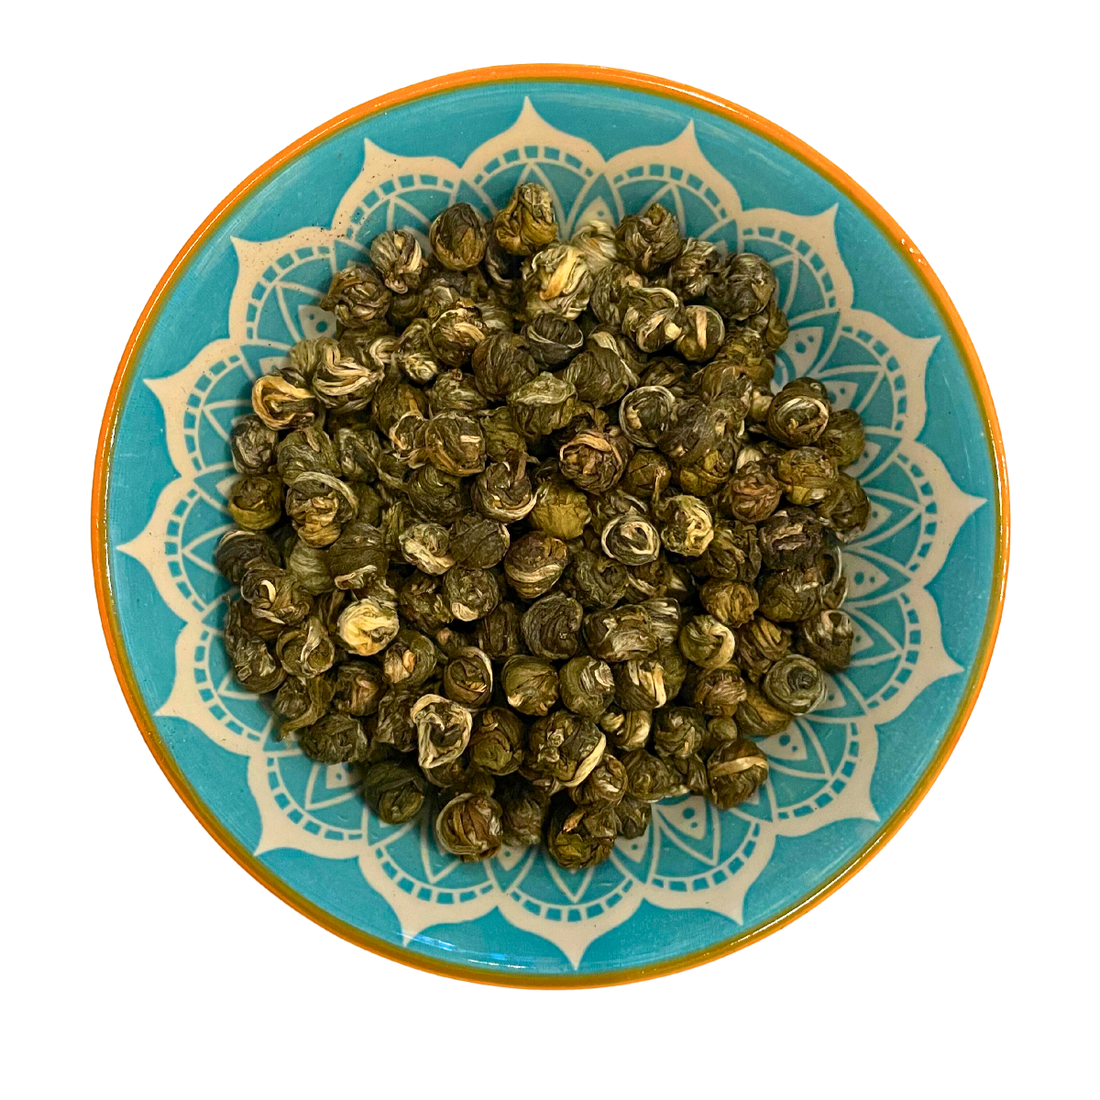 Jasmine Dragon Pearls – Chinese green loose leaf tea | MDTEA